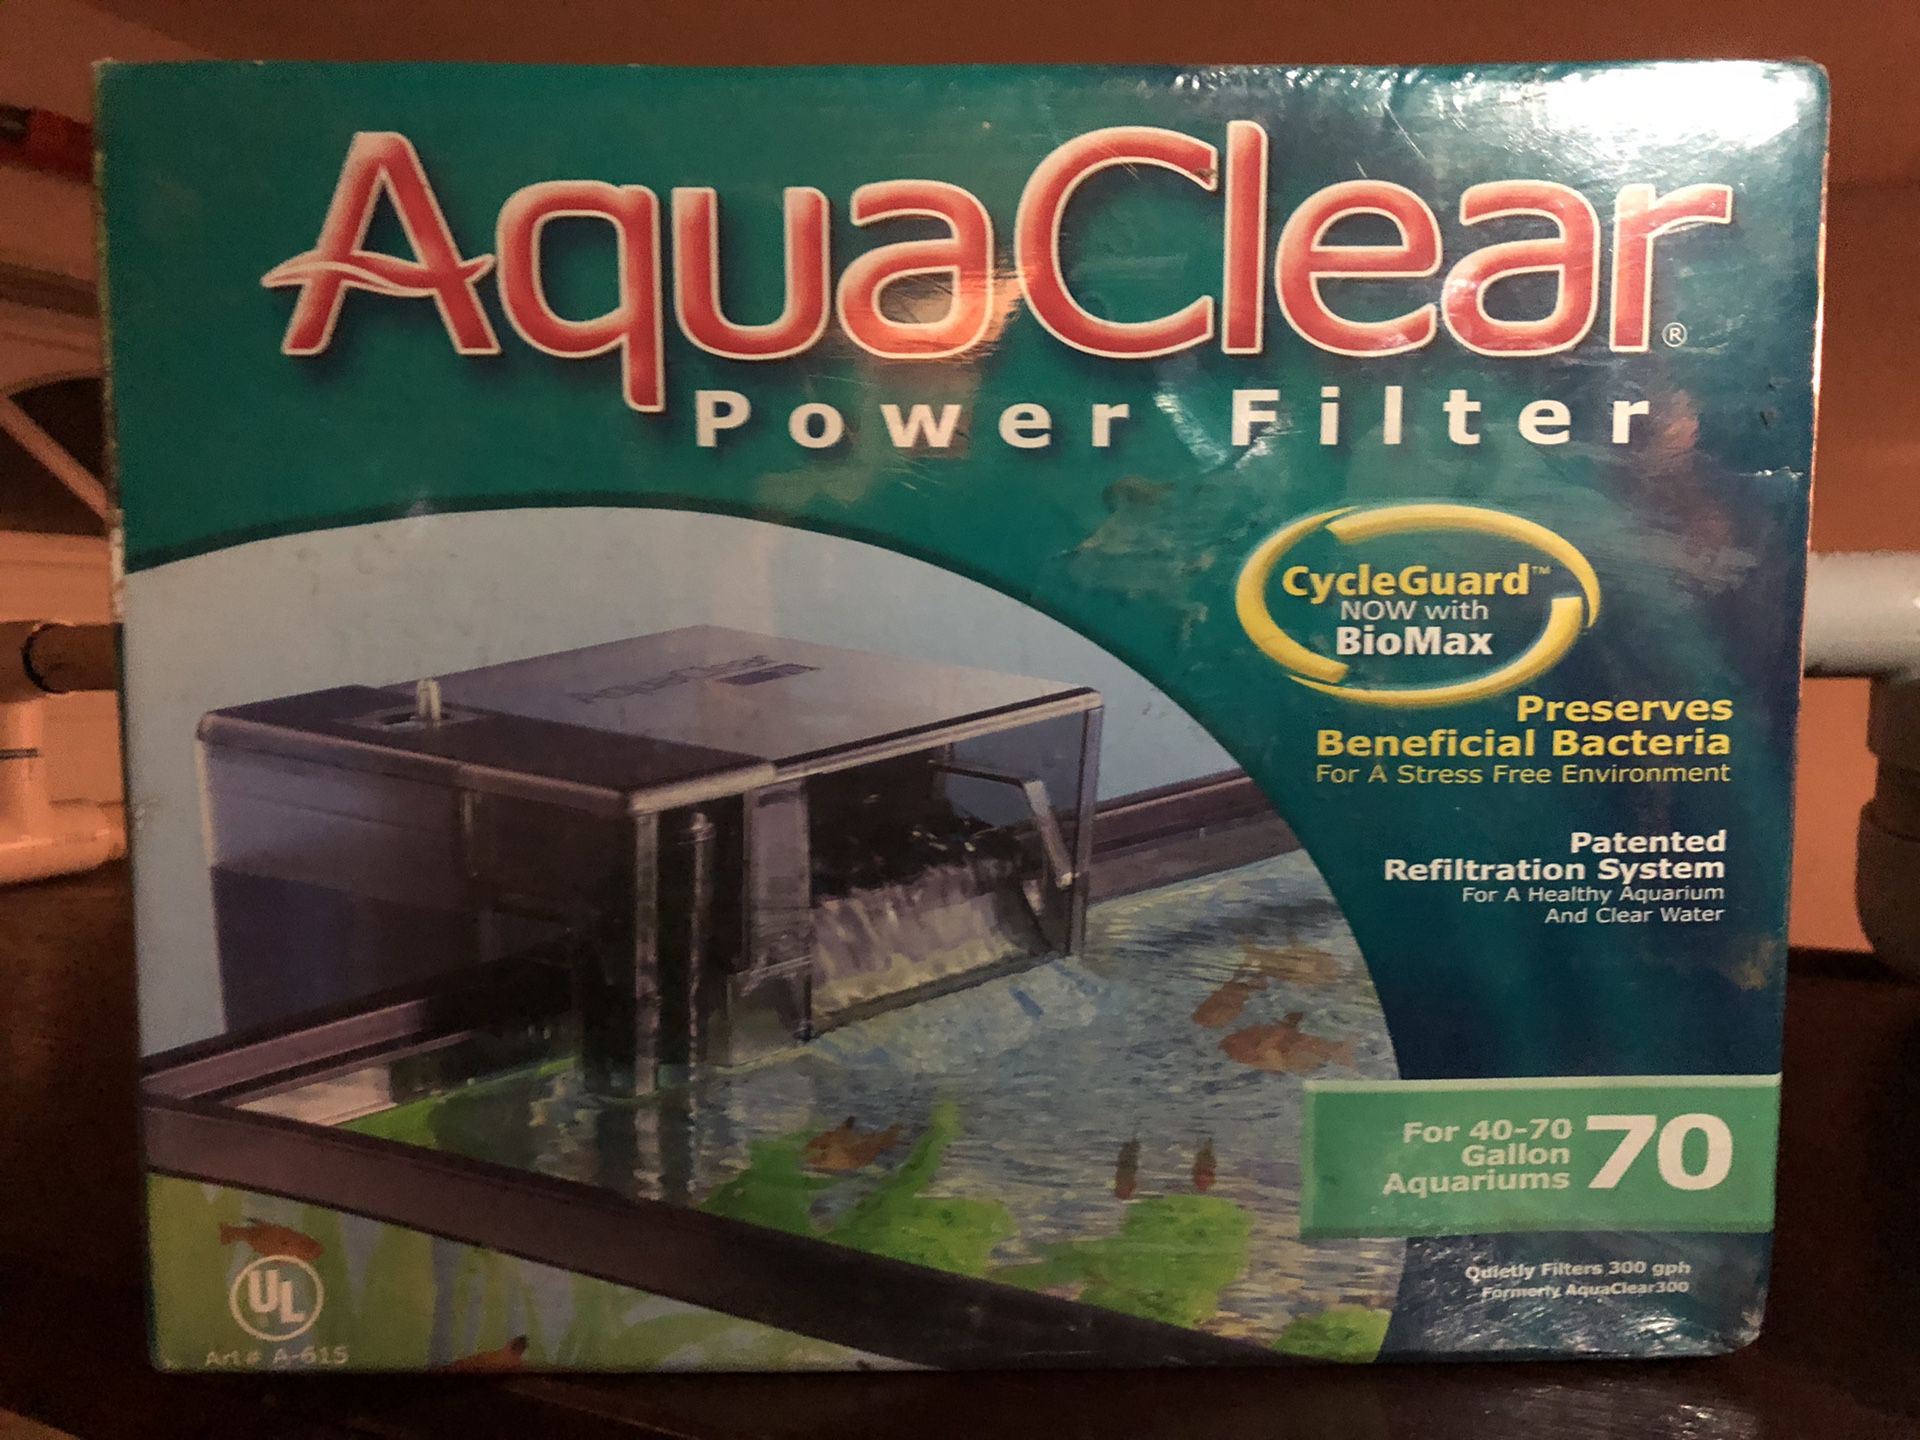 AquaClear power filter for 70 gallon Aquarium